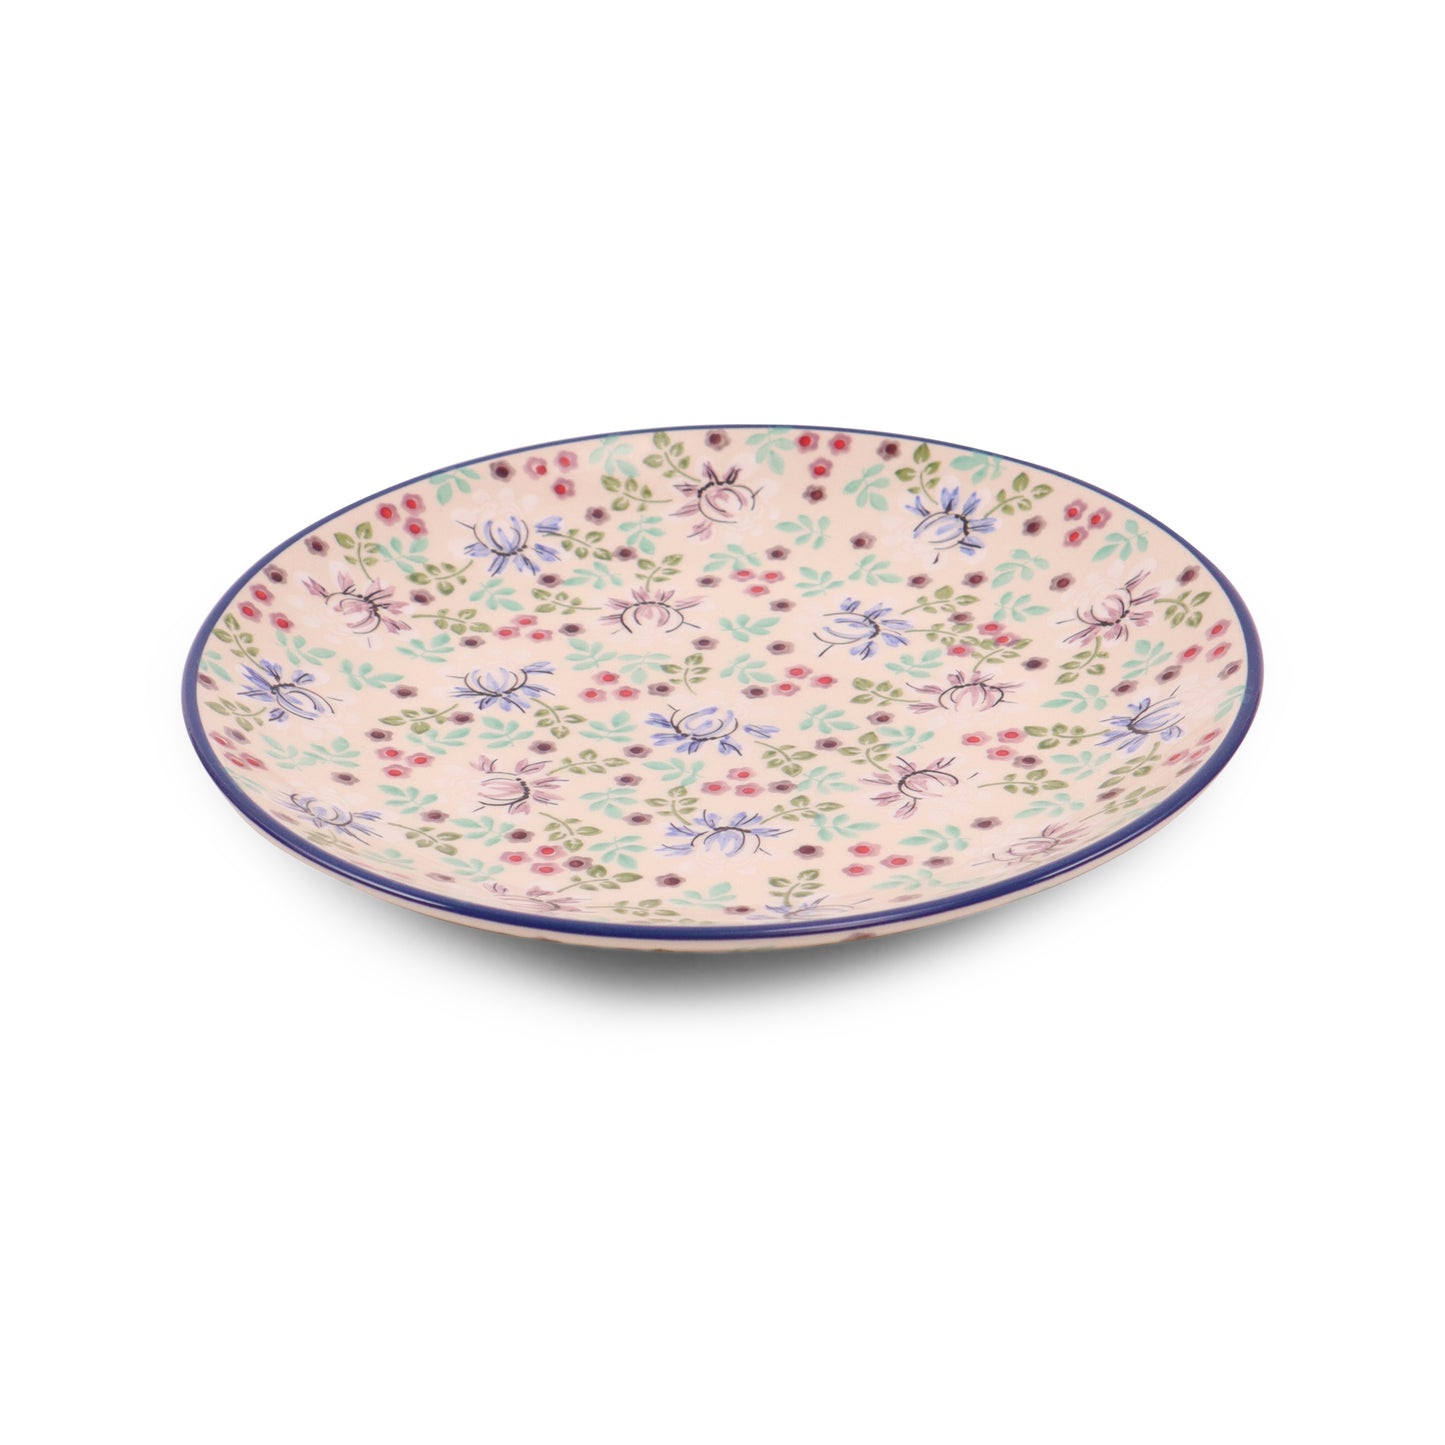 10" Dinner Plate. Pattern: Vintage Floral